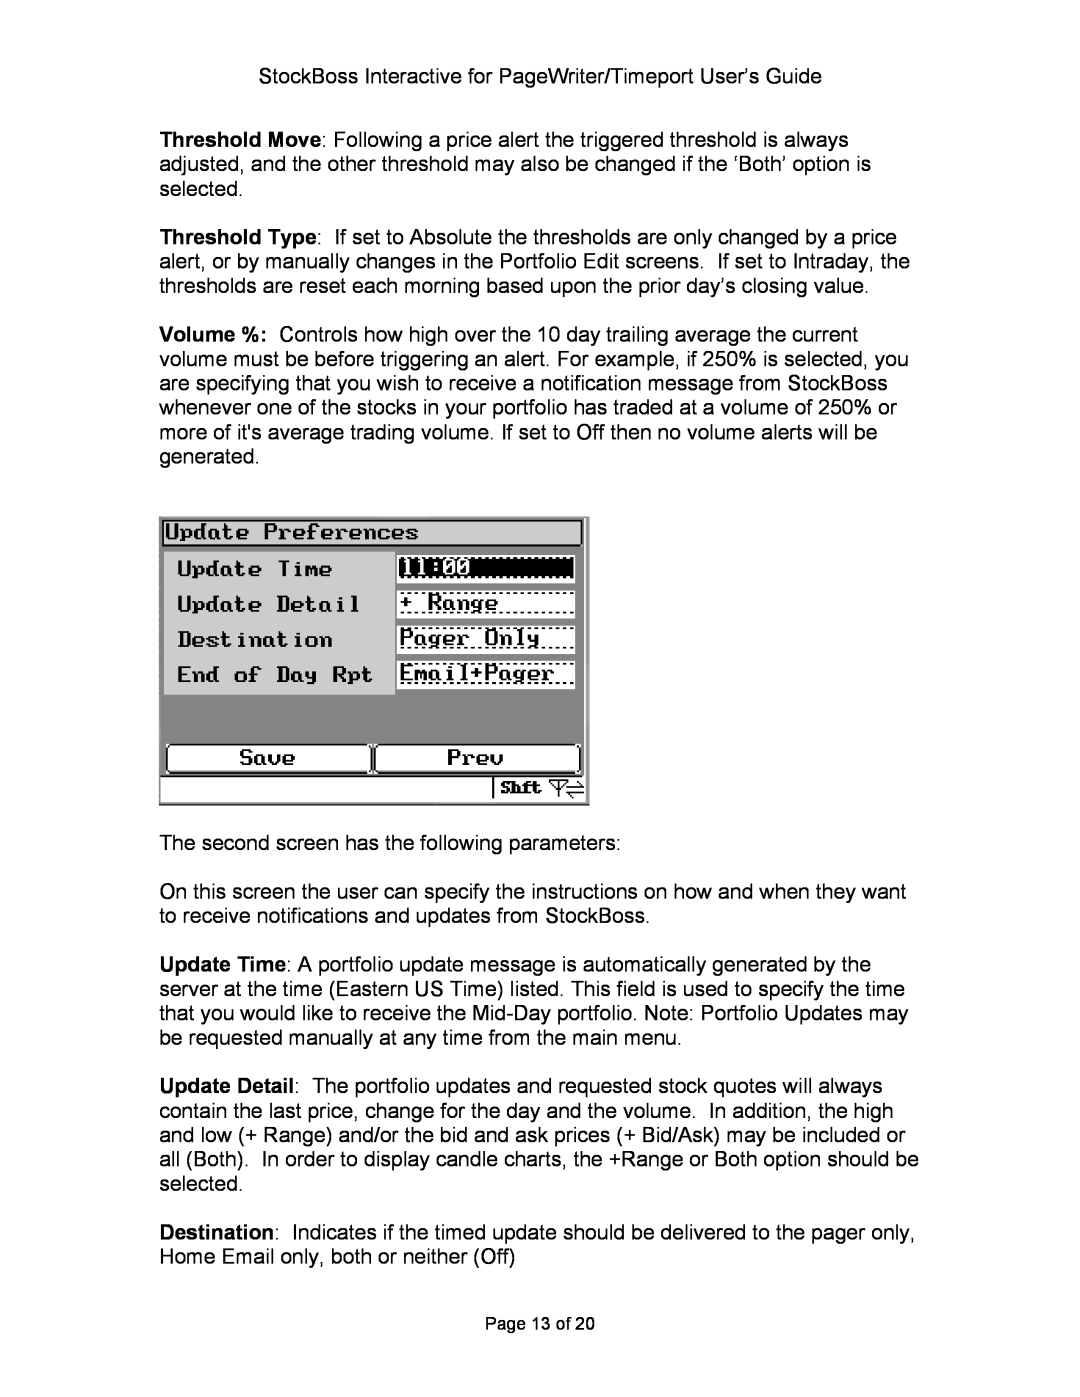 Motorola P930 Series manual Page 13 of 